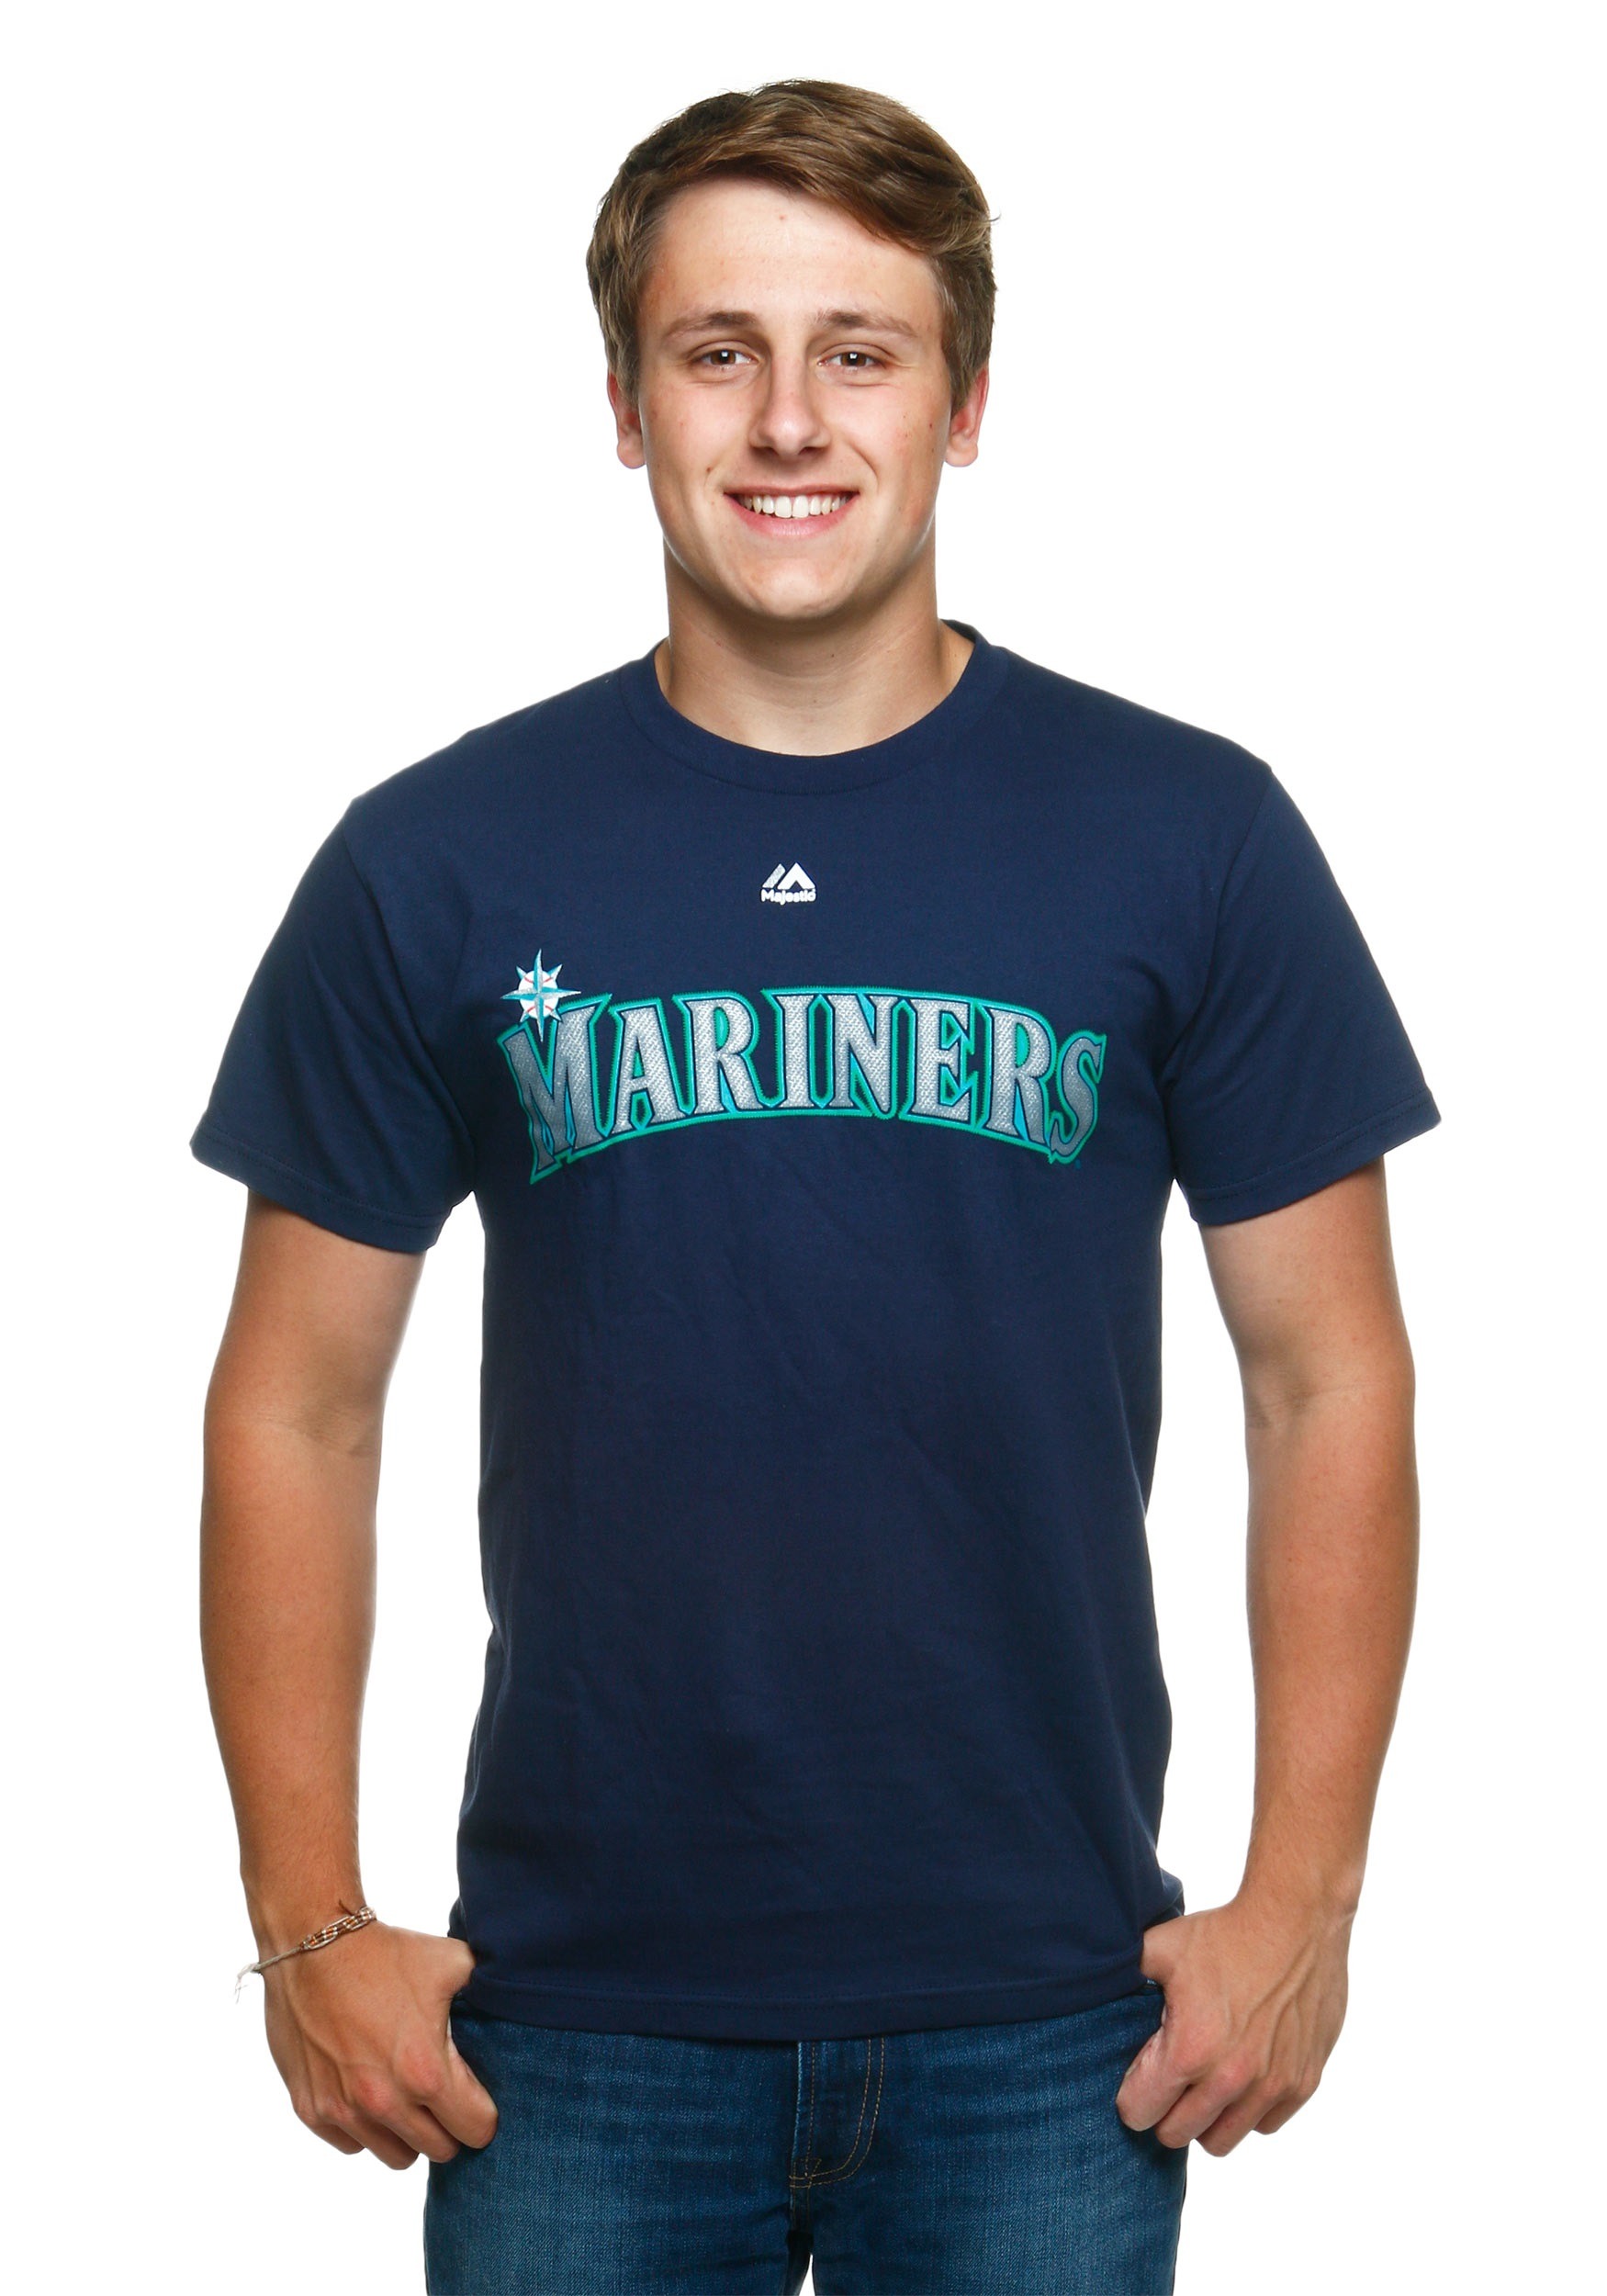 mariners shirts seattle